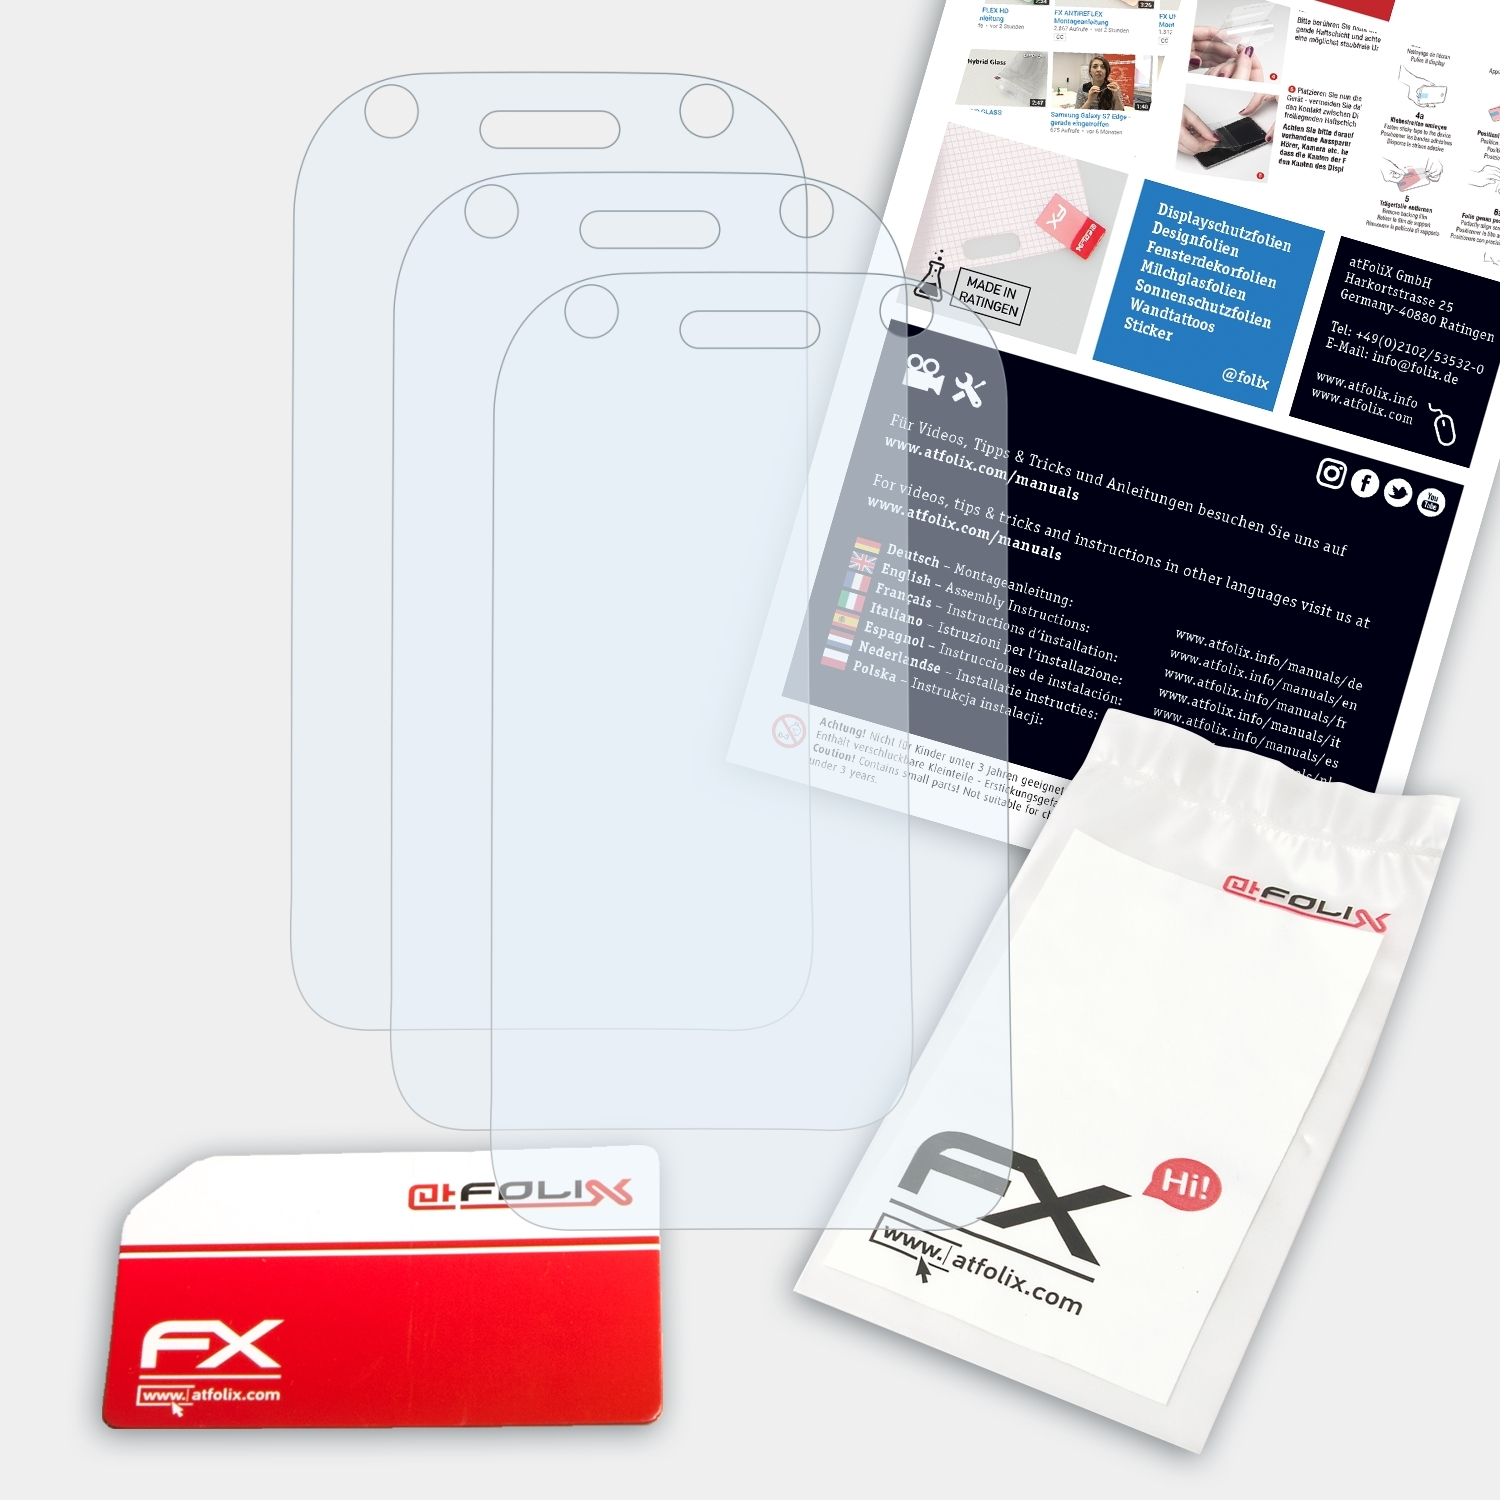 ATFOLIX 3x FX-Clear Displayschutz(für PhoneEasy 410gsm) Doro